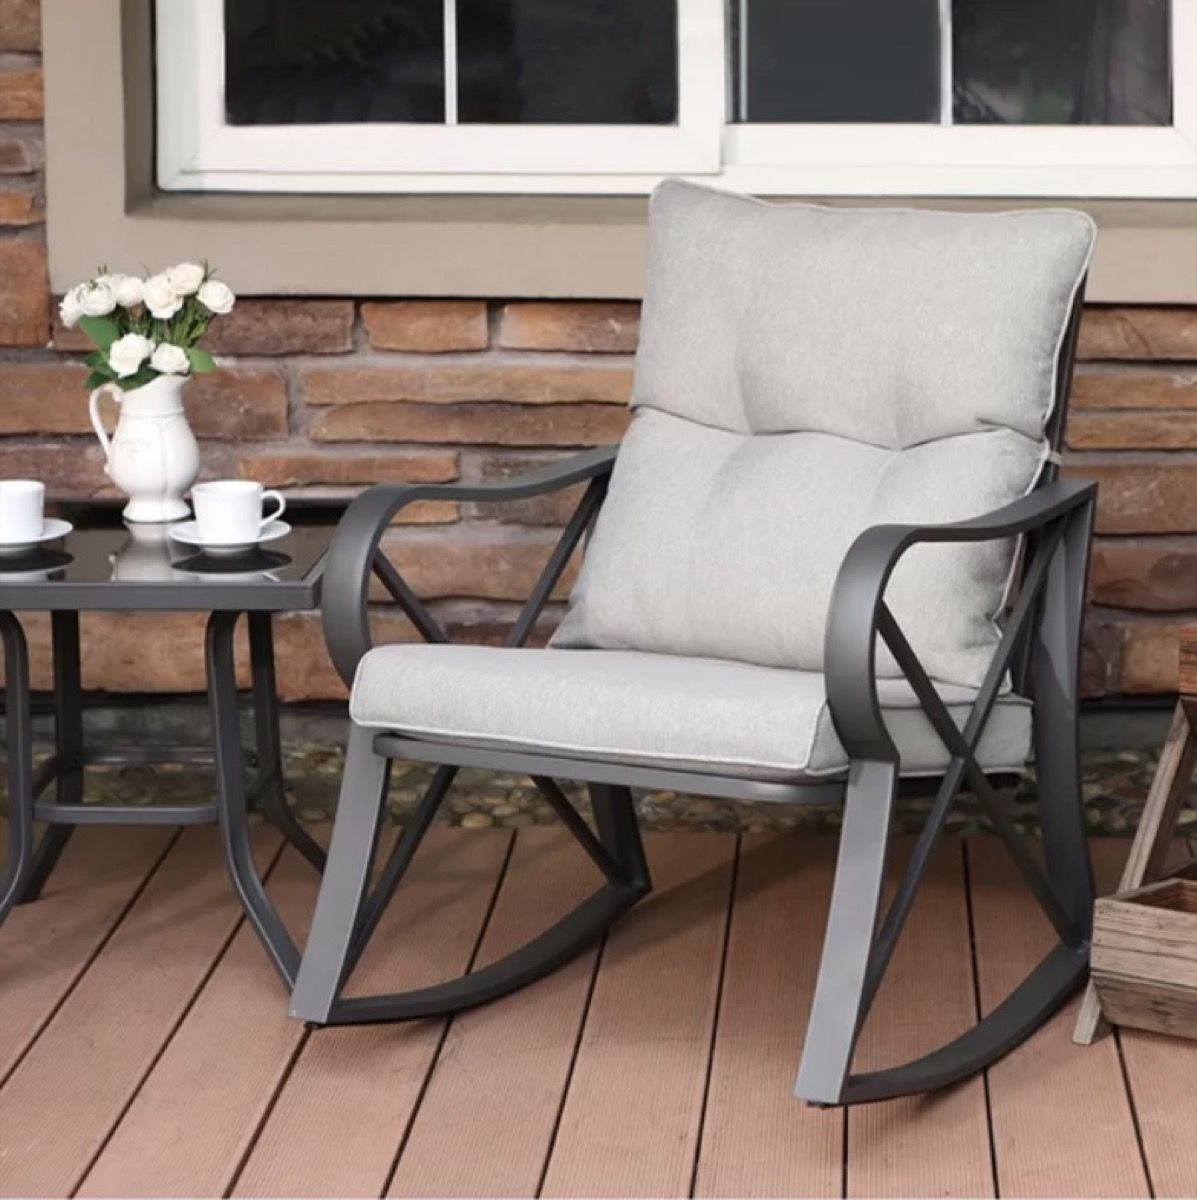 stoel en tafel met metalen poten op veranda